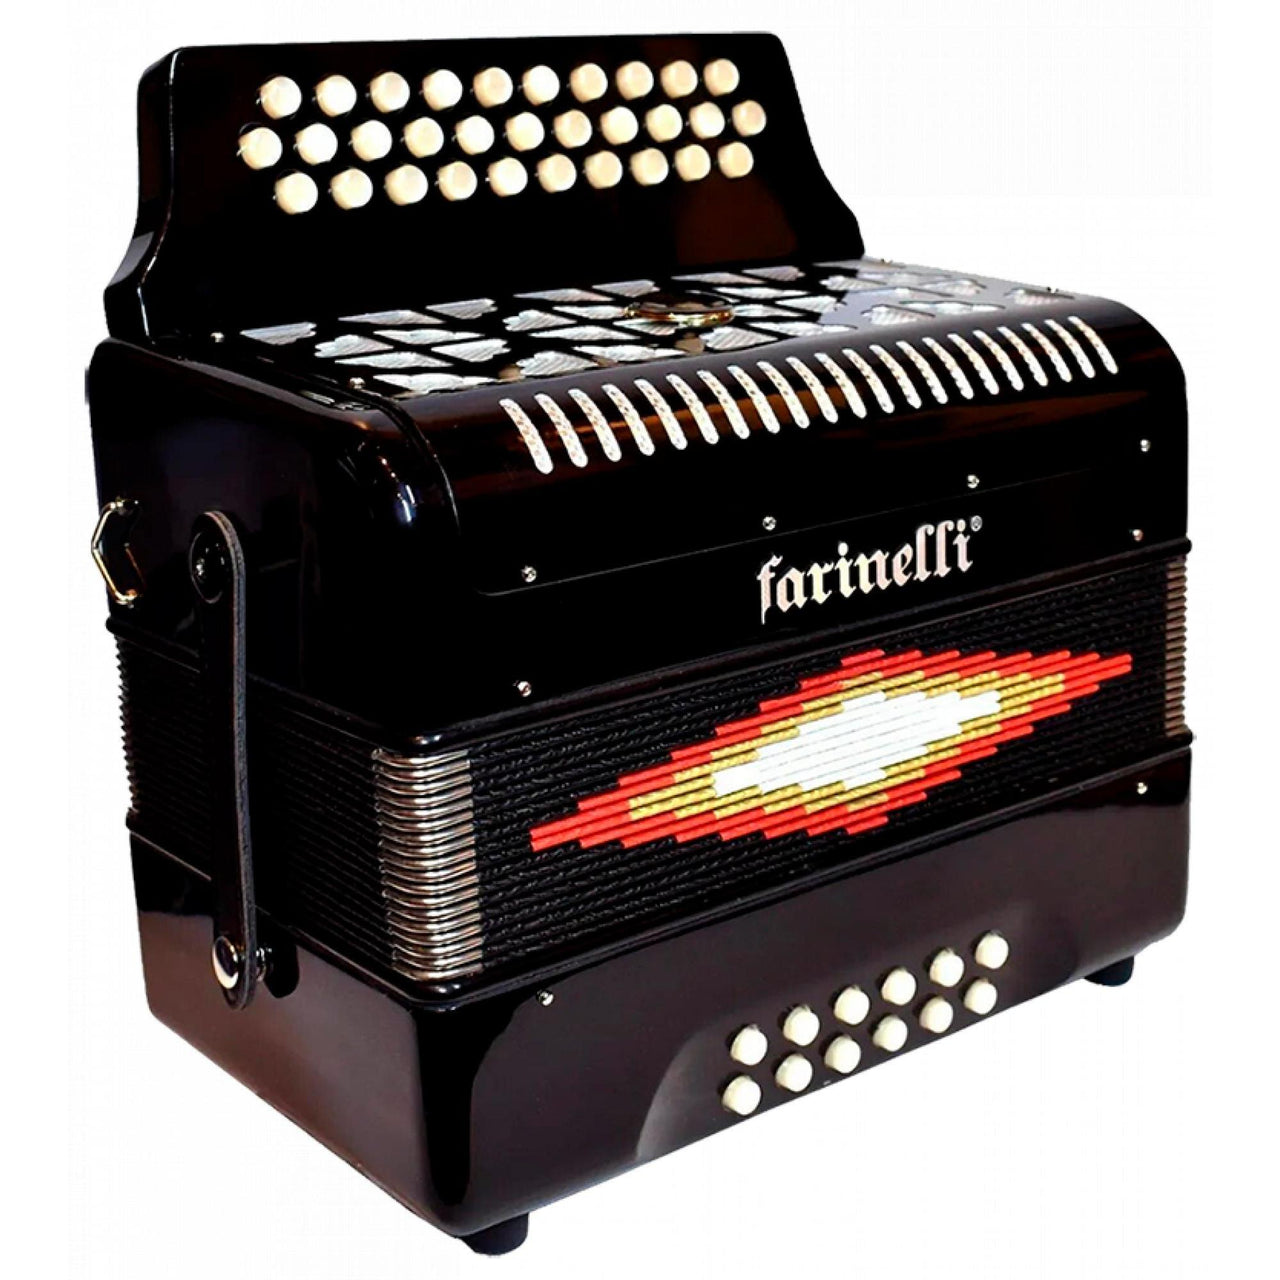 Acordeon Farinelli Premium Botones Bea Negro 3012sin